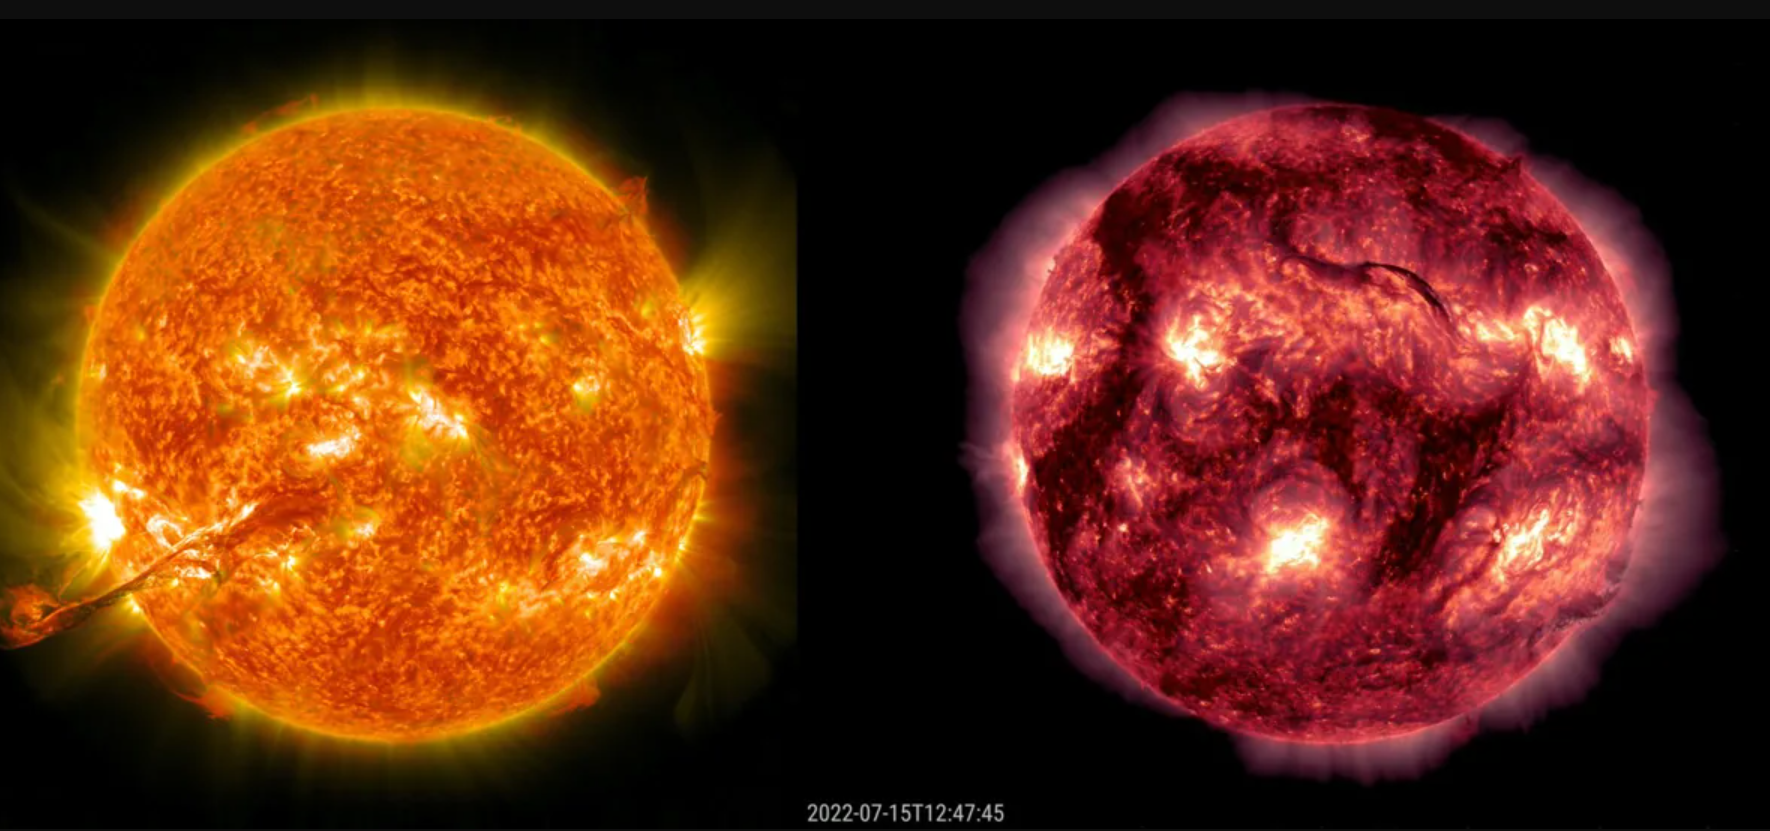 Bão mặt Trời và Trái đất: Bão mặt Trời luôn gây ra nhiều ảnh hưởng đến Trái đất, từ sóng điện từ đến các hiện tượng ánh sáng đặc biệt. Xem hình ảnh này để chiêm ngưỡng hình ảnh của Bão Mặt Trời và tìm hiểu thêm về sự ảnh hưởng của nó trong vũ trụ.